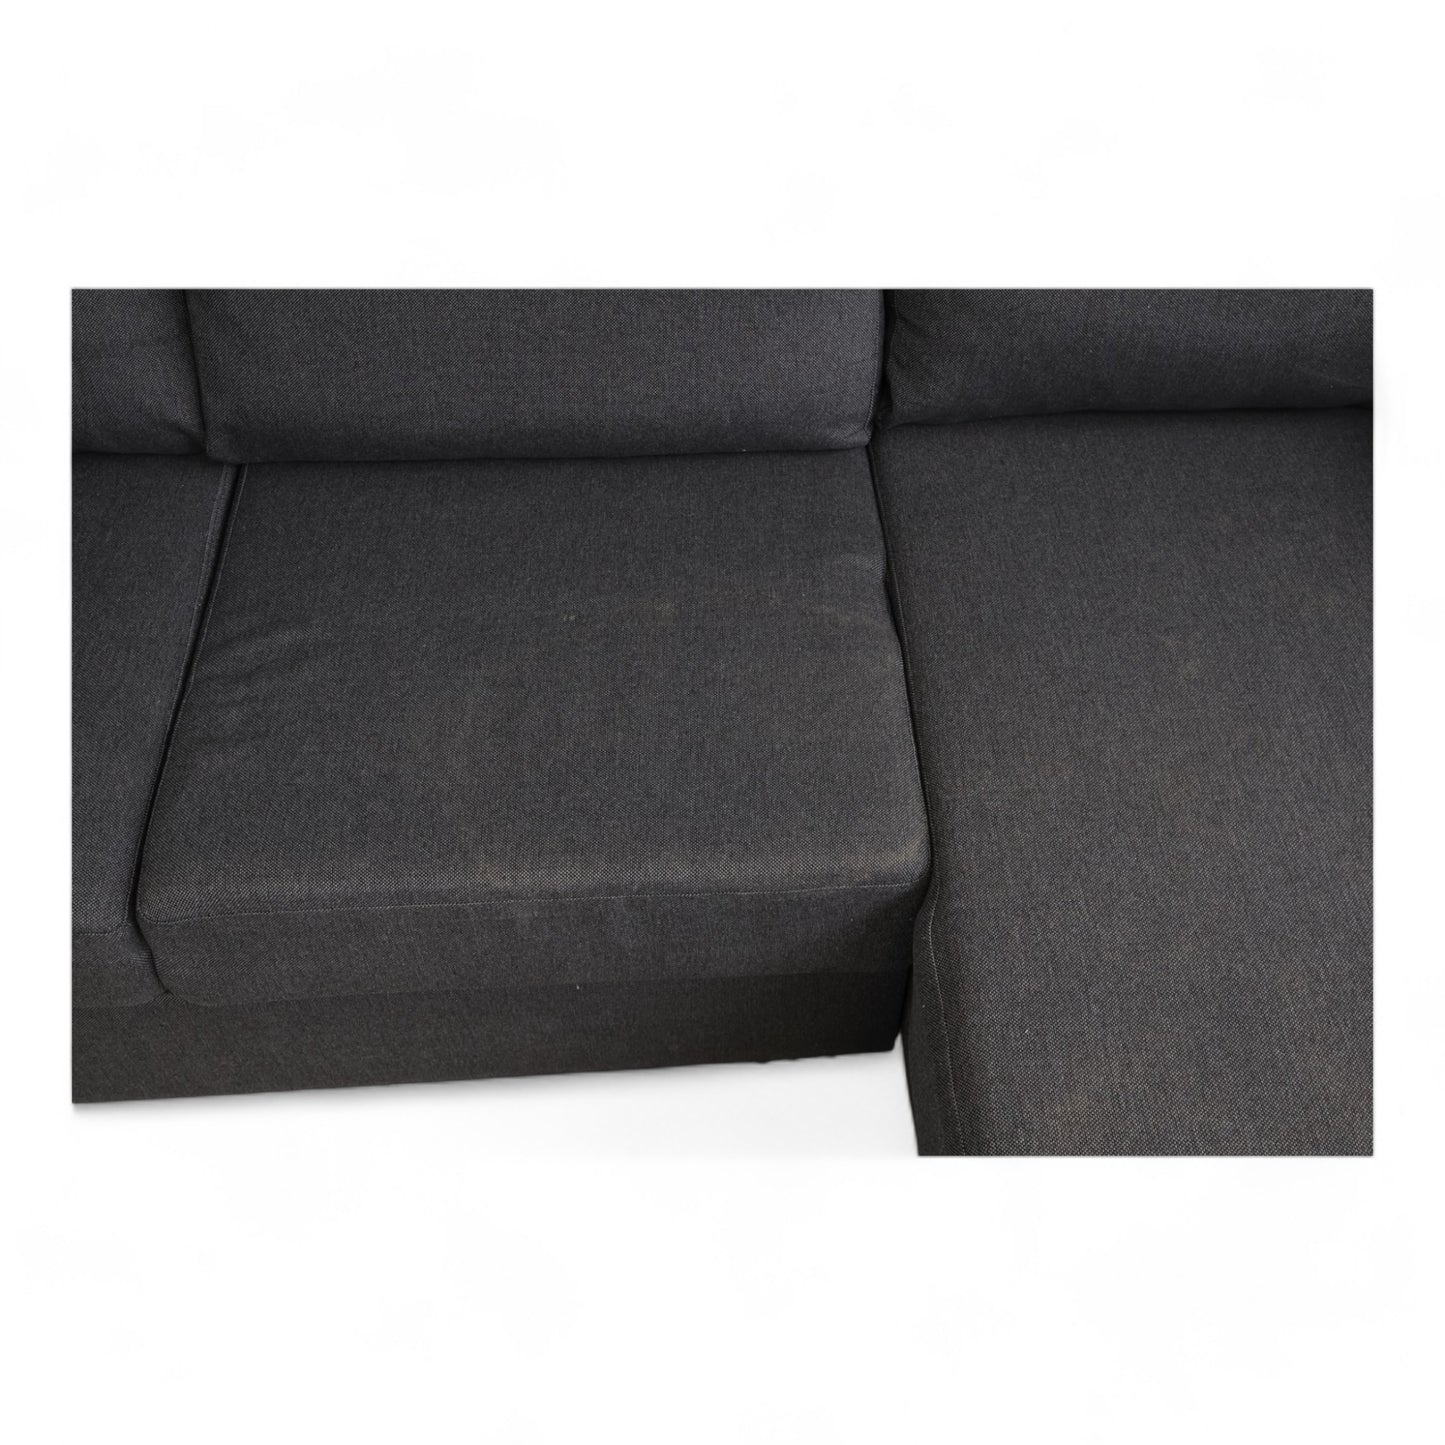 Nyrenset | Mørk grå sovesofa med sjeselong